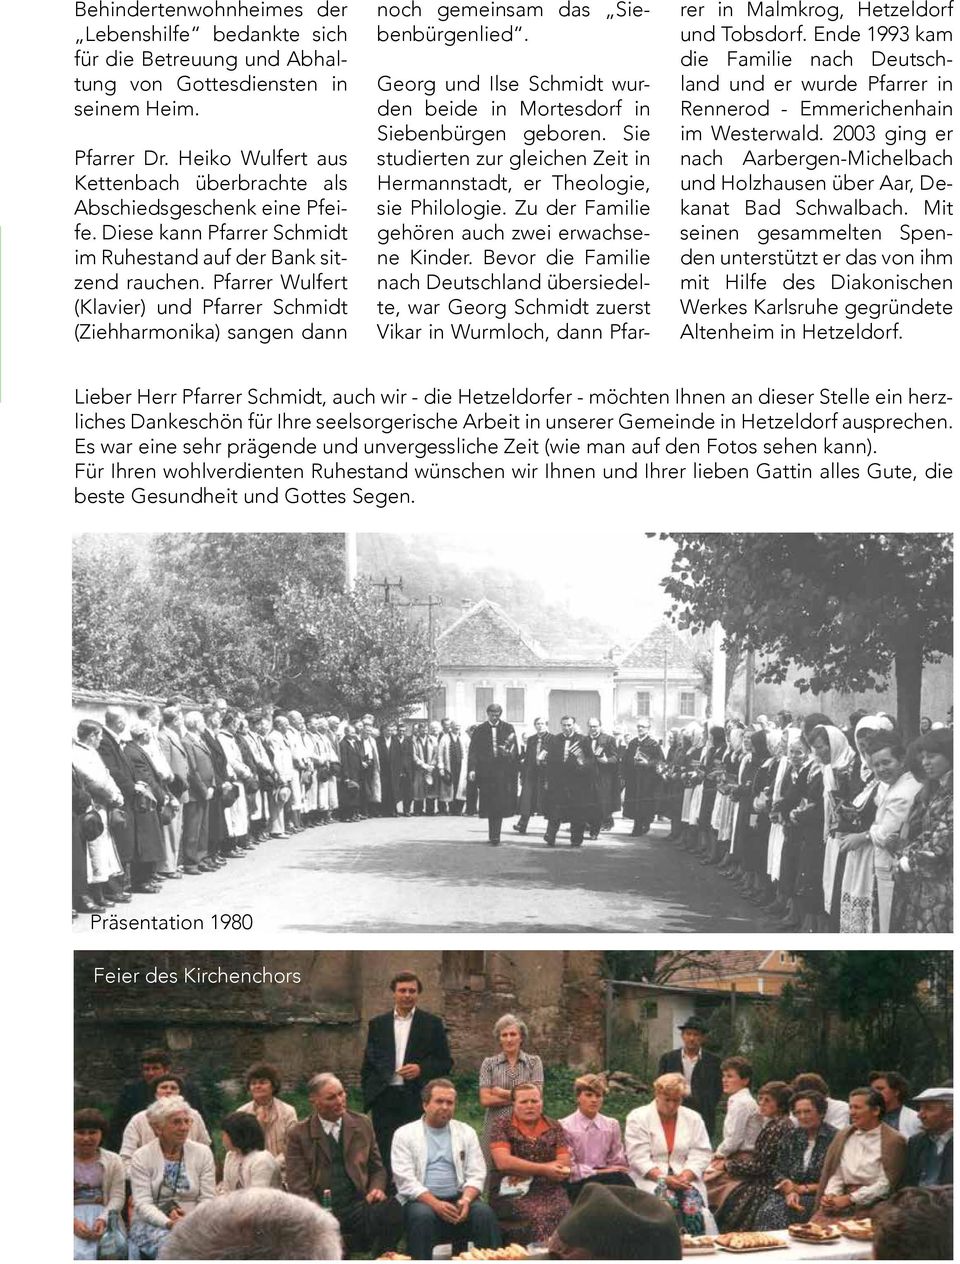 Pfarrer Wulfert (Klavier) und Pfarrer Schmidt (Ziehharmonika) sangen dann noch gemeinsam das Siebenbürgenlied. Georg und Ilse Schmidt wurden beide in Mortesdorf in Siebenbürgen geboren.